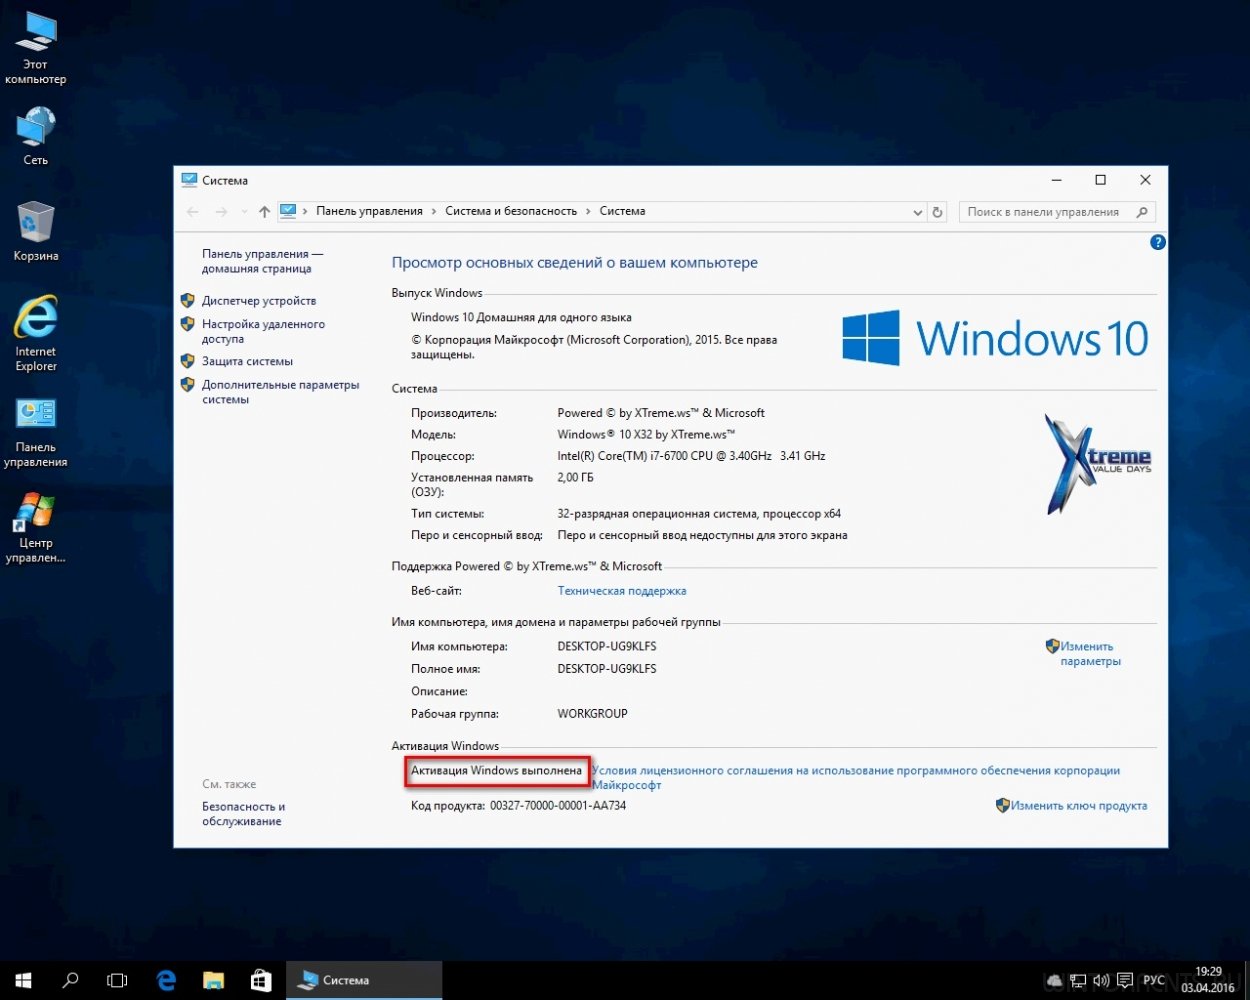 Виндовс 10 сборка для слабый. Windows 10 Pro x64 2014. Операционная система Microsoft Windows 10 домашняя. Производитель системы Windows 10.